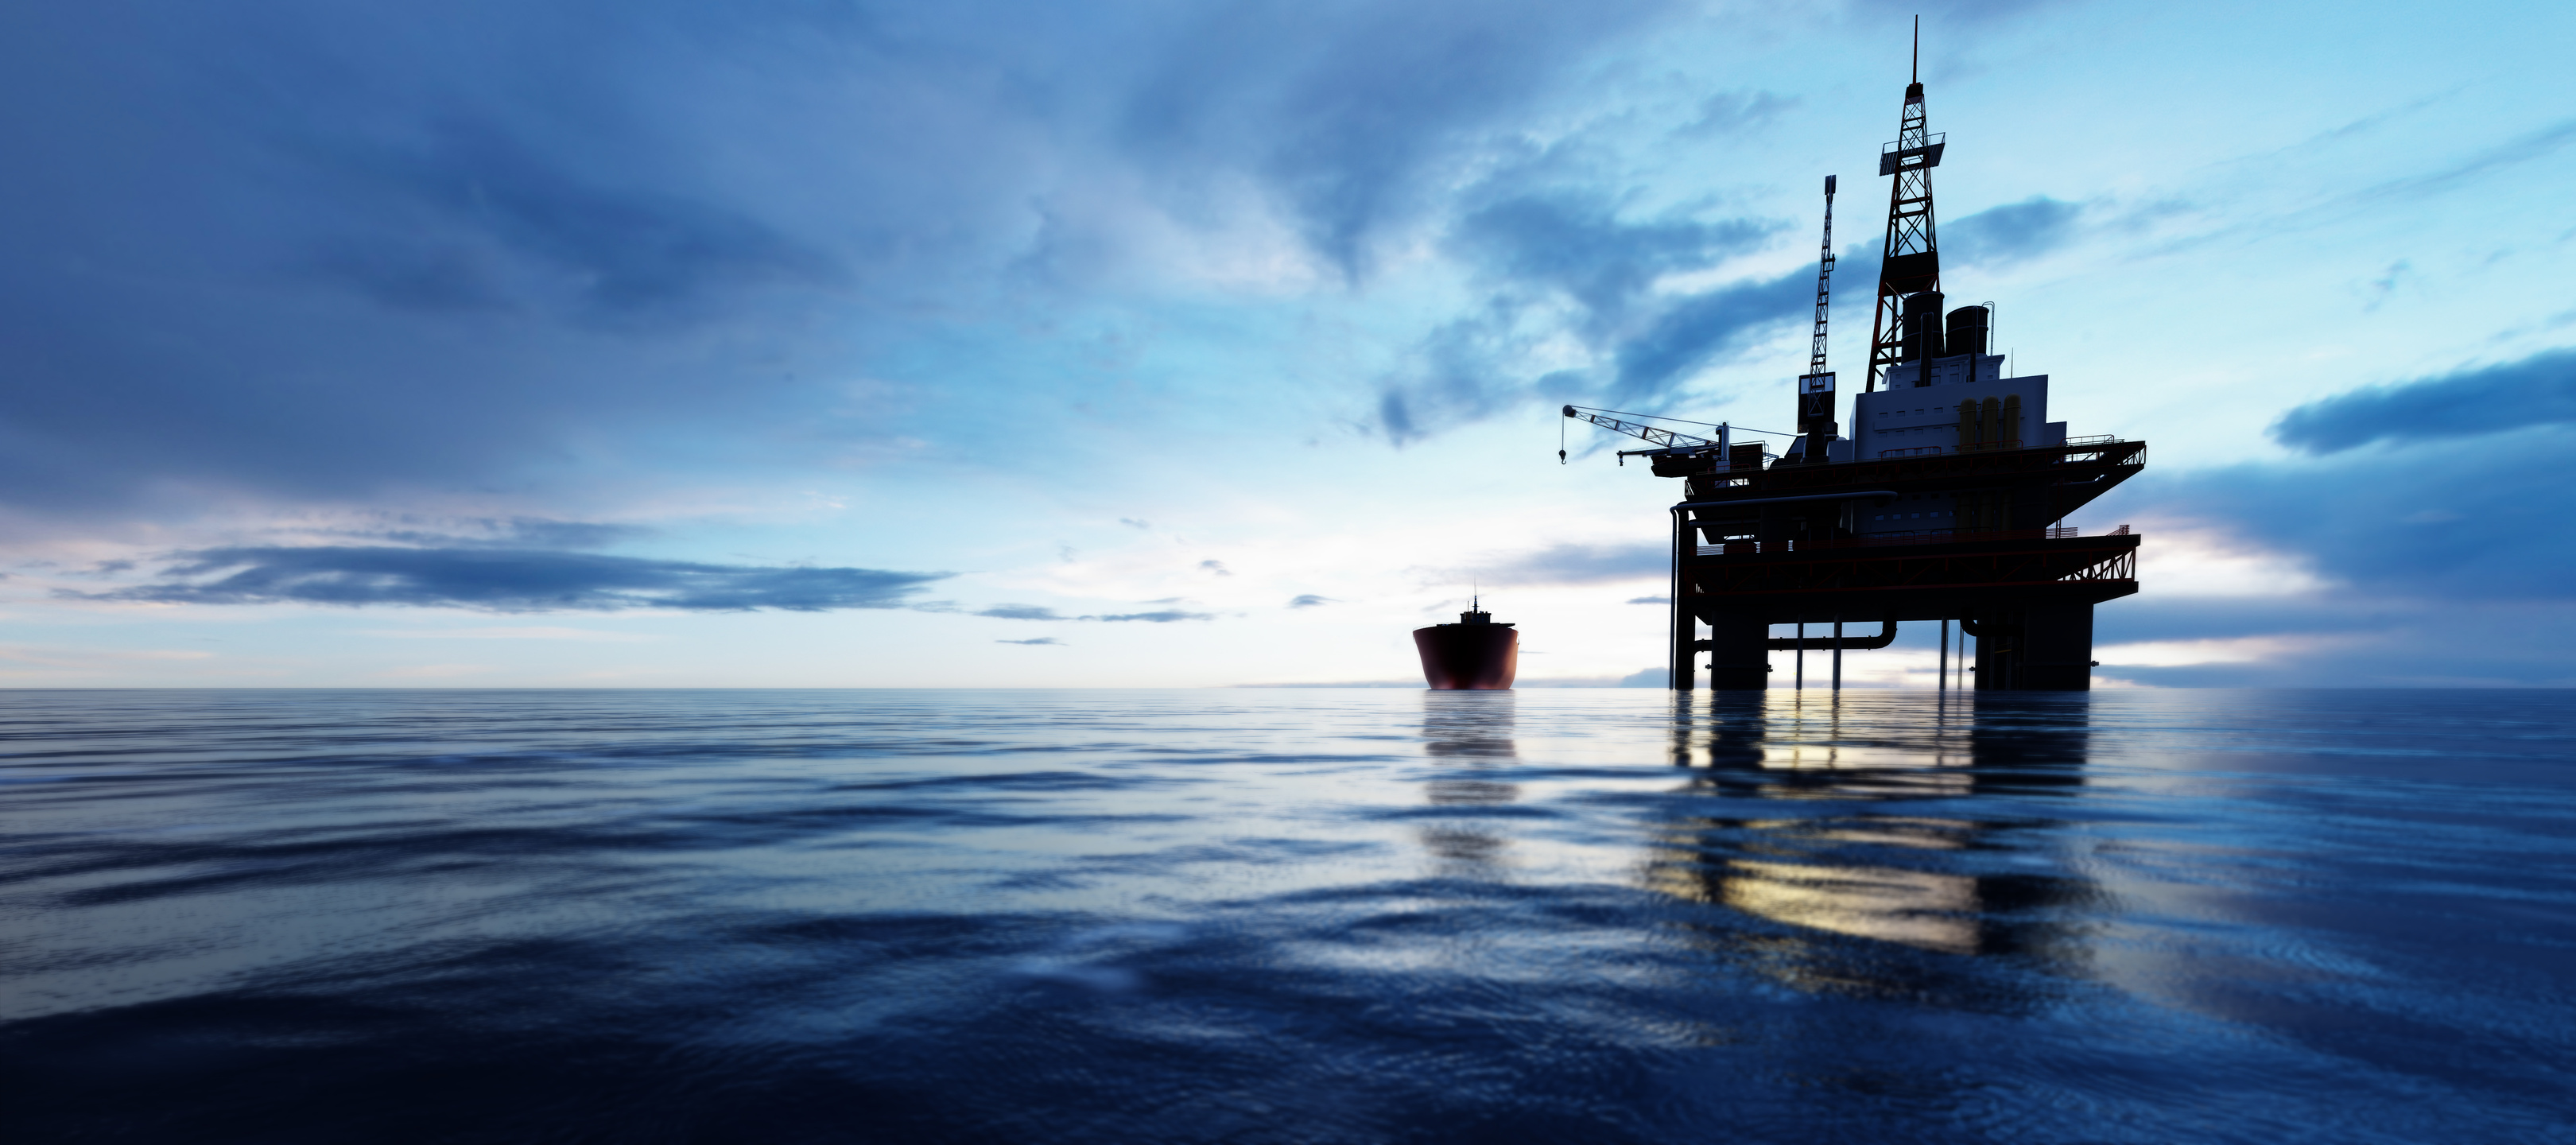 Oil Platform in the Ocean